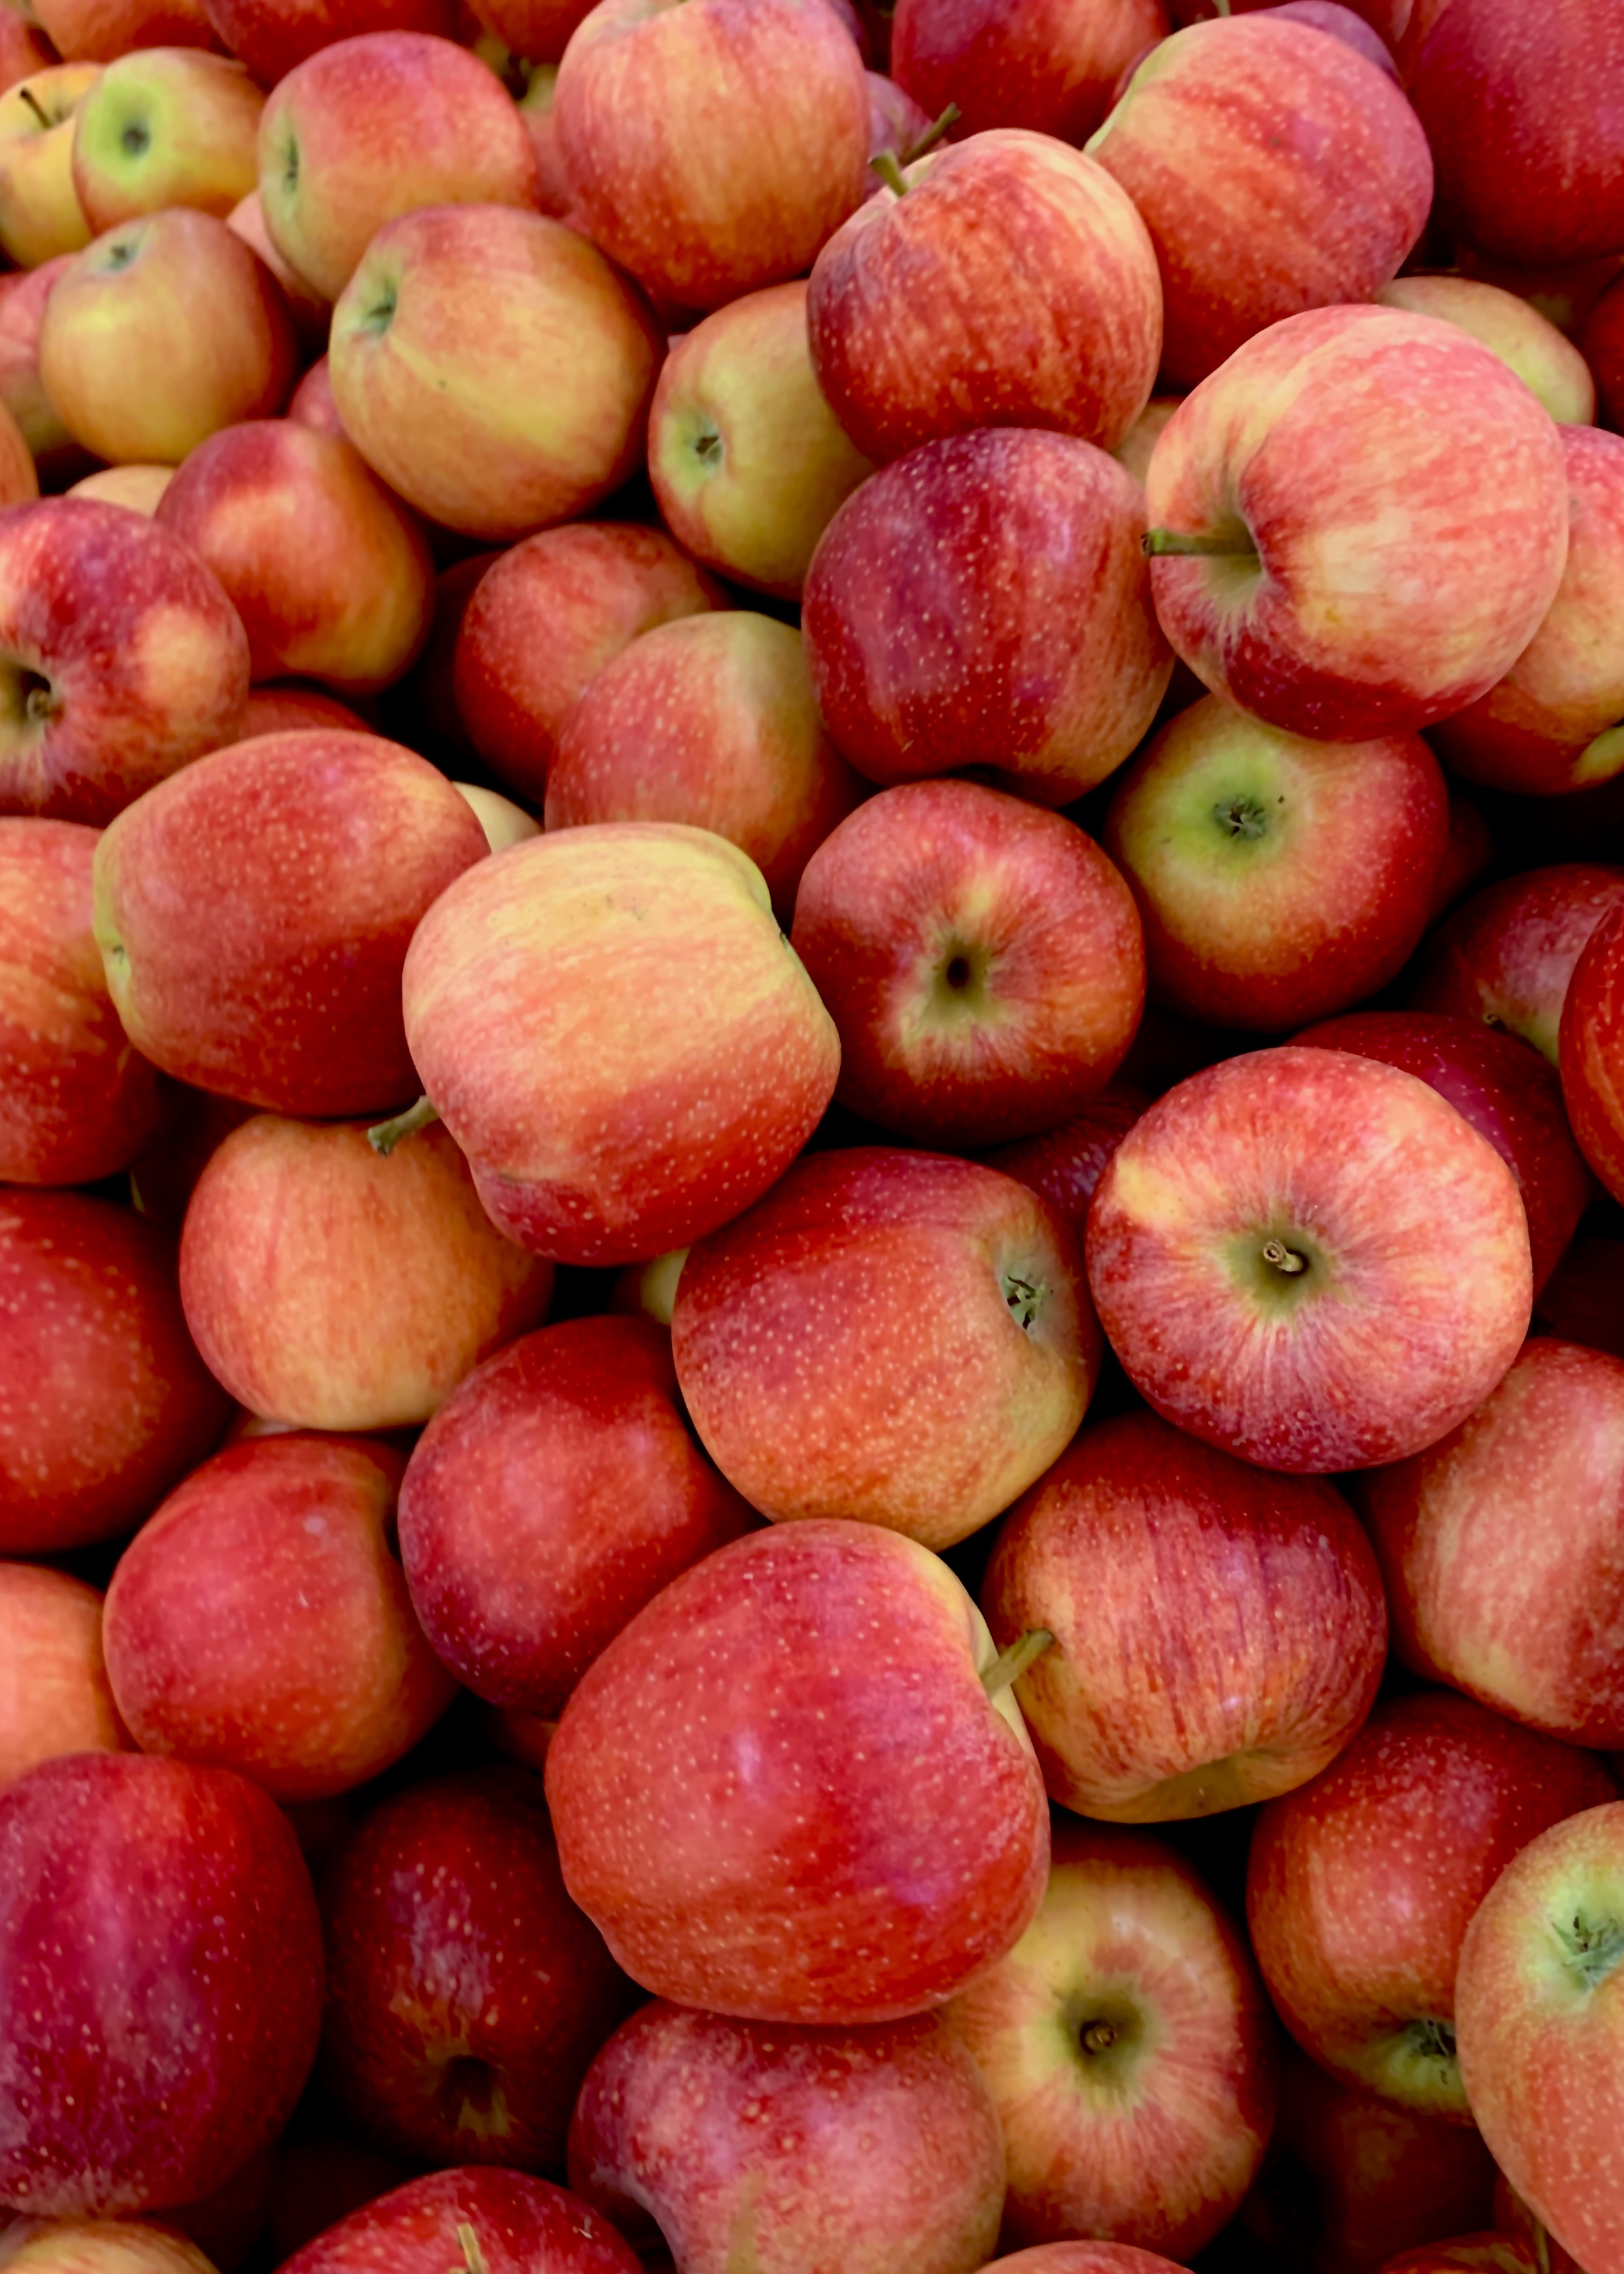 Principaux avantages pour la santé des pommes